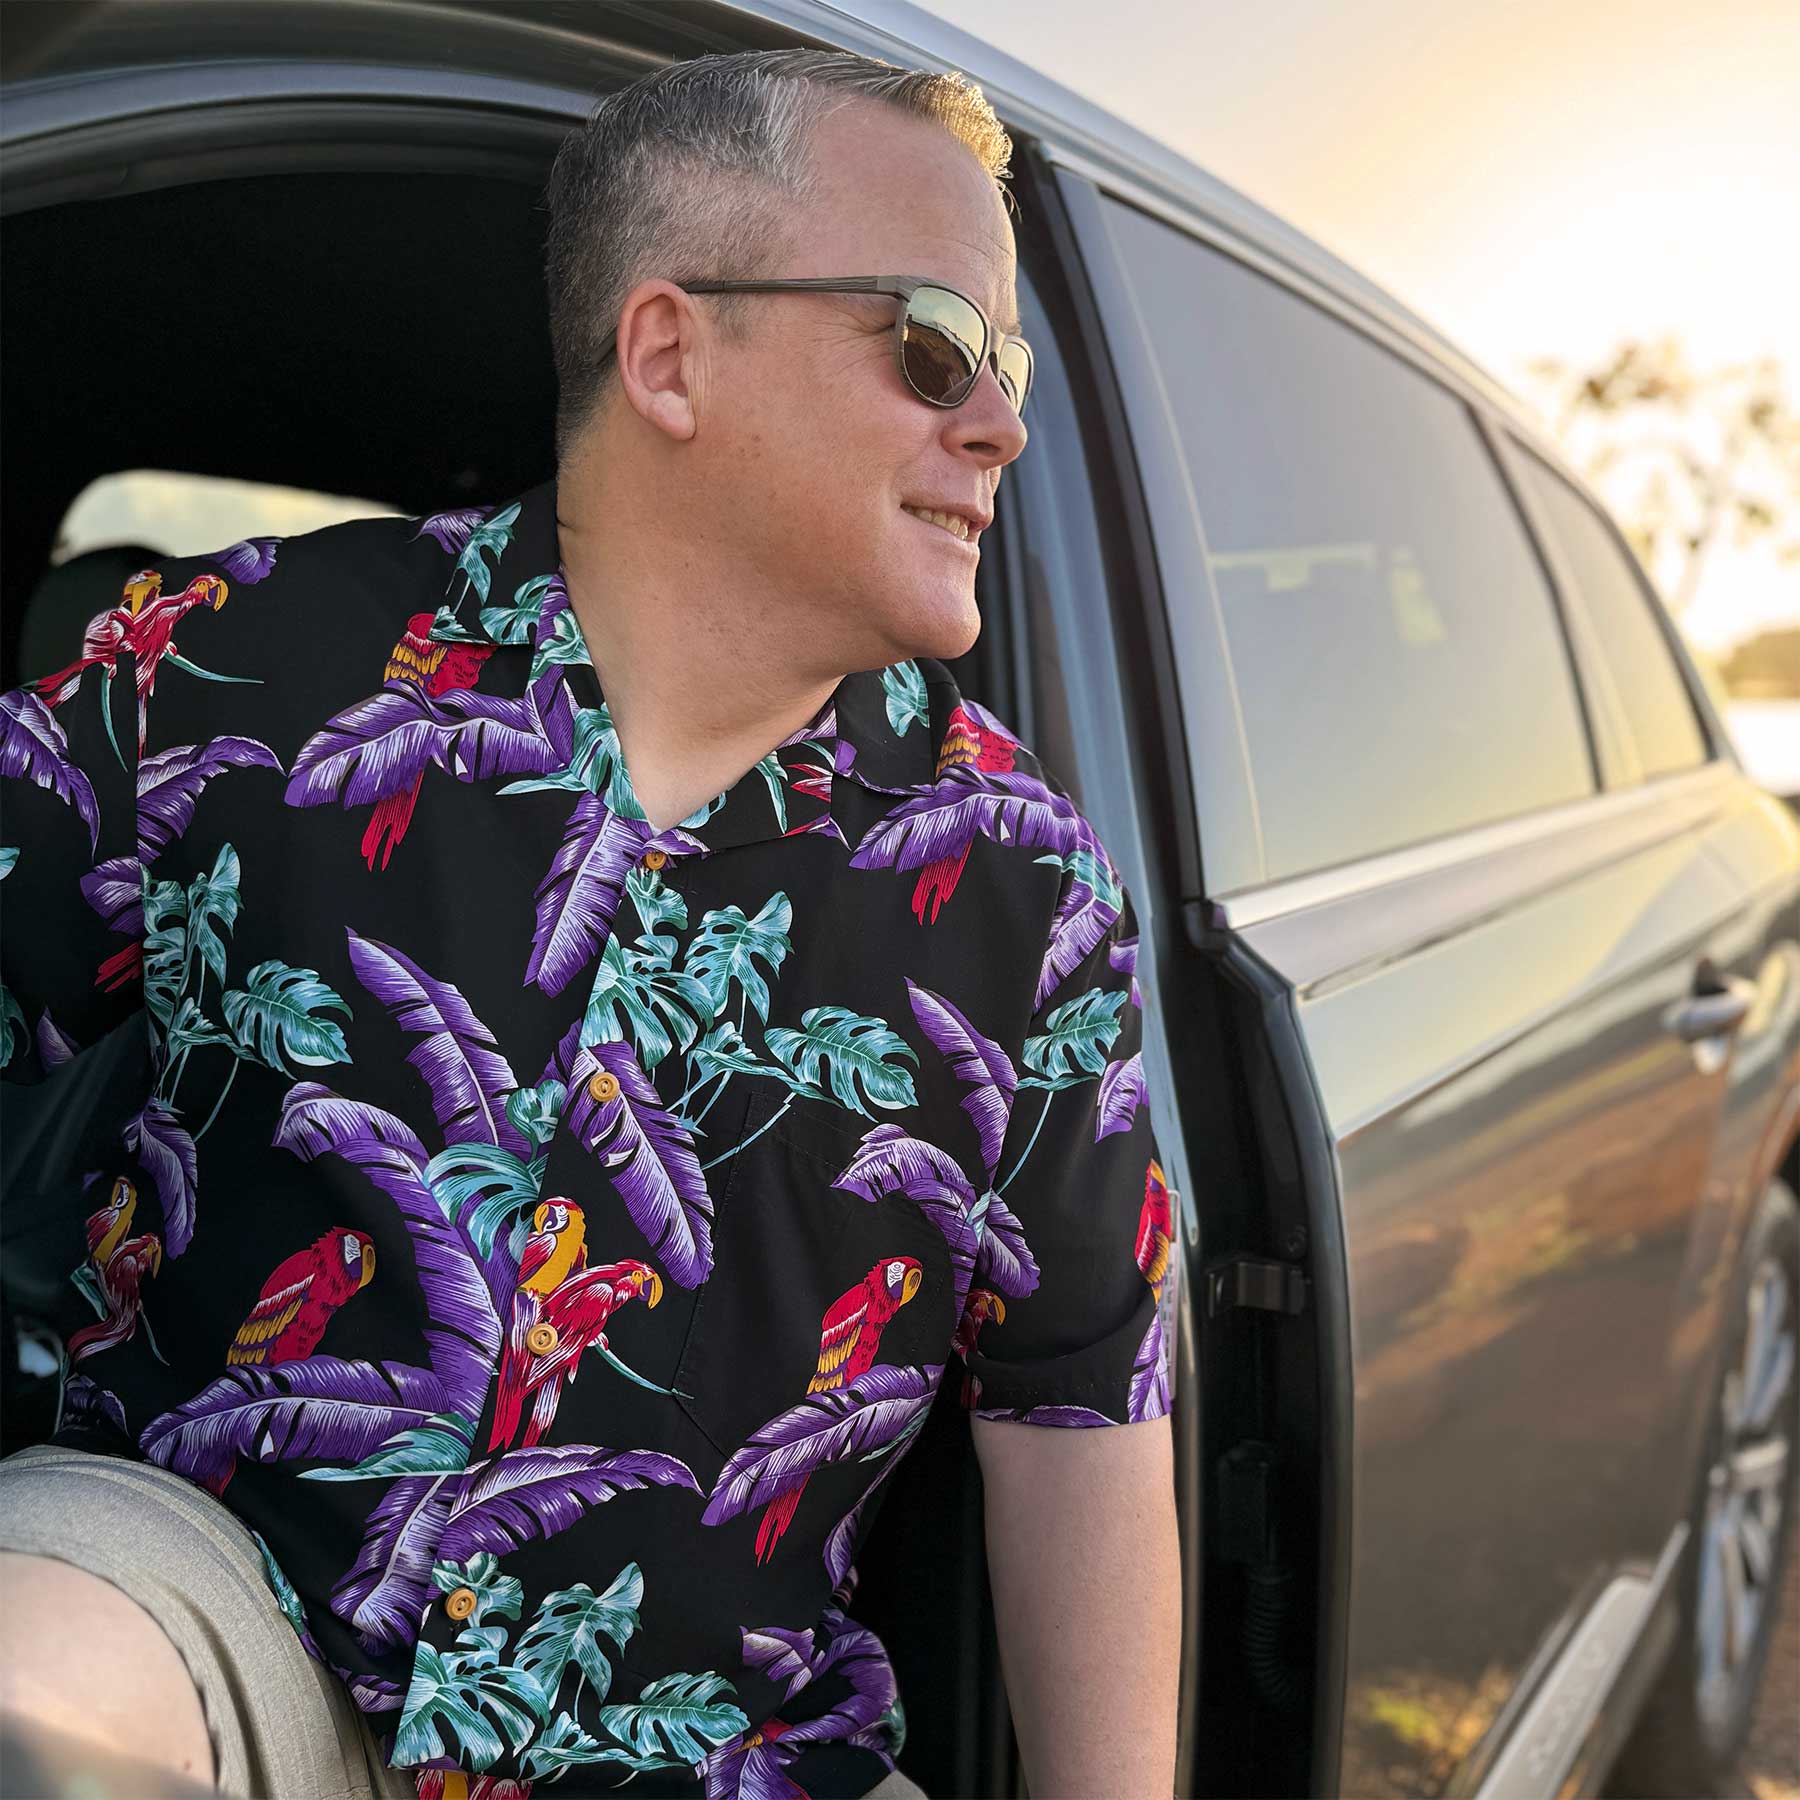 Mens Long Sleeve Aloha Shirt S Mossimo brand, NWT, Pink with Hula